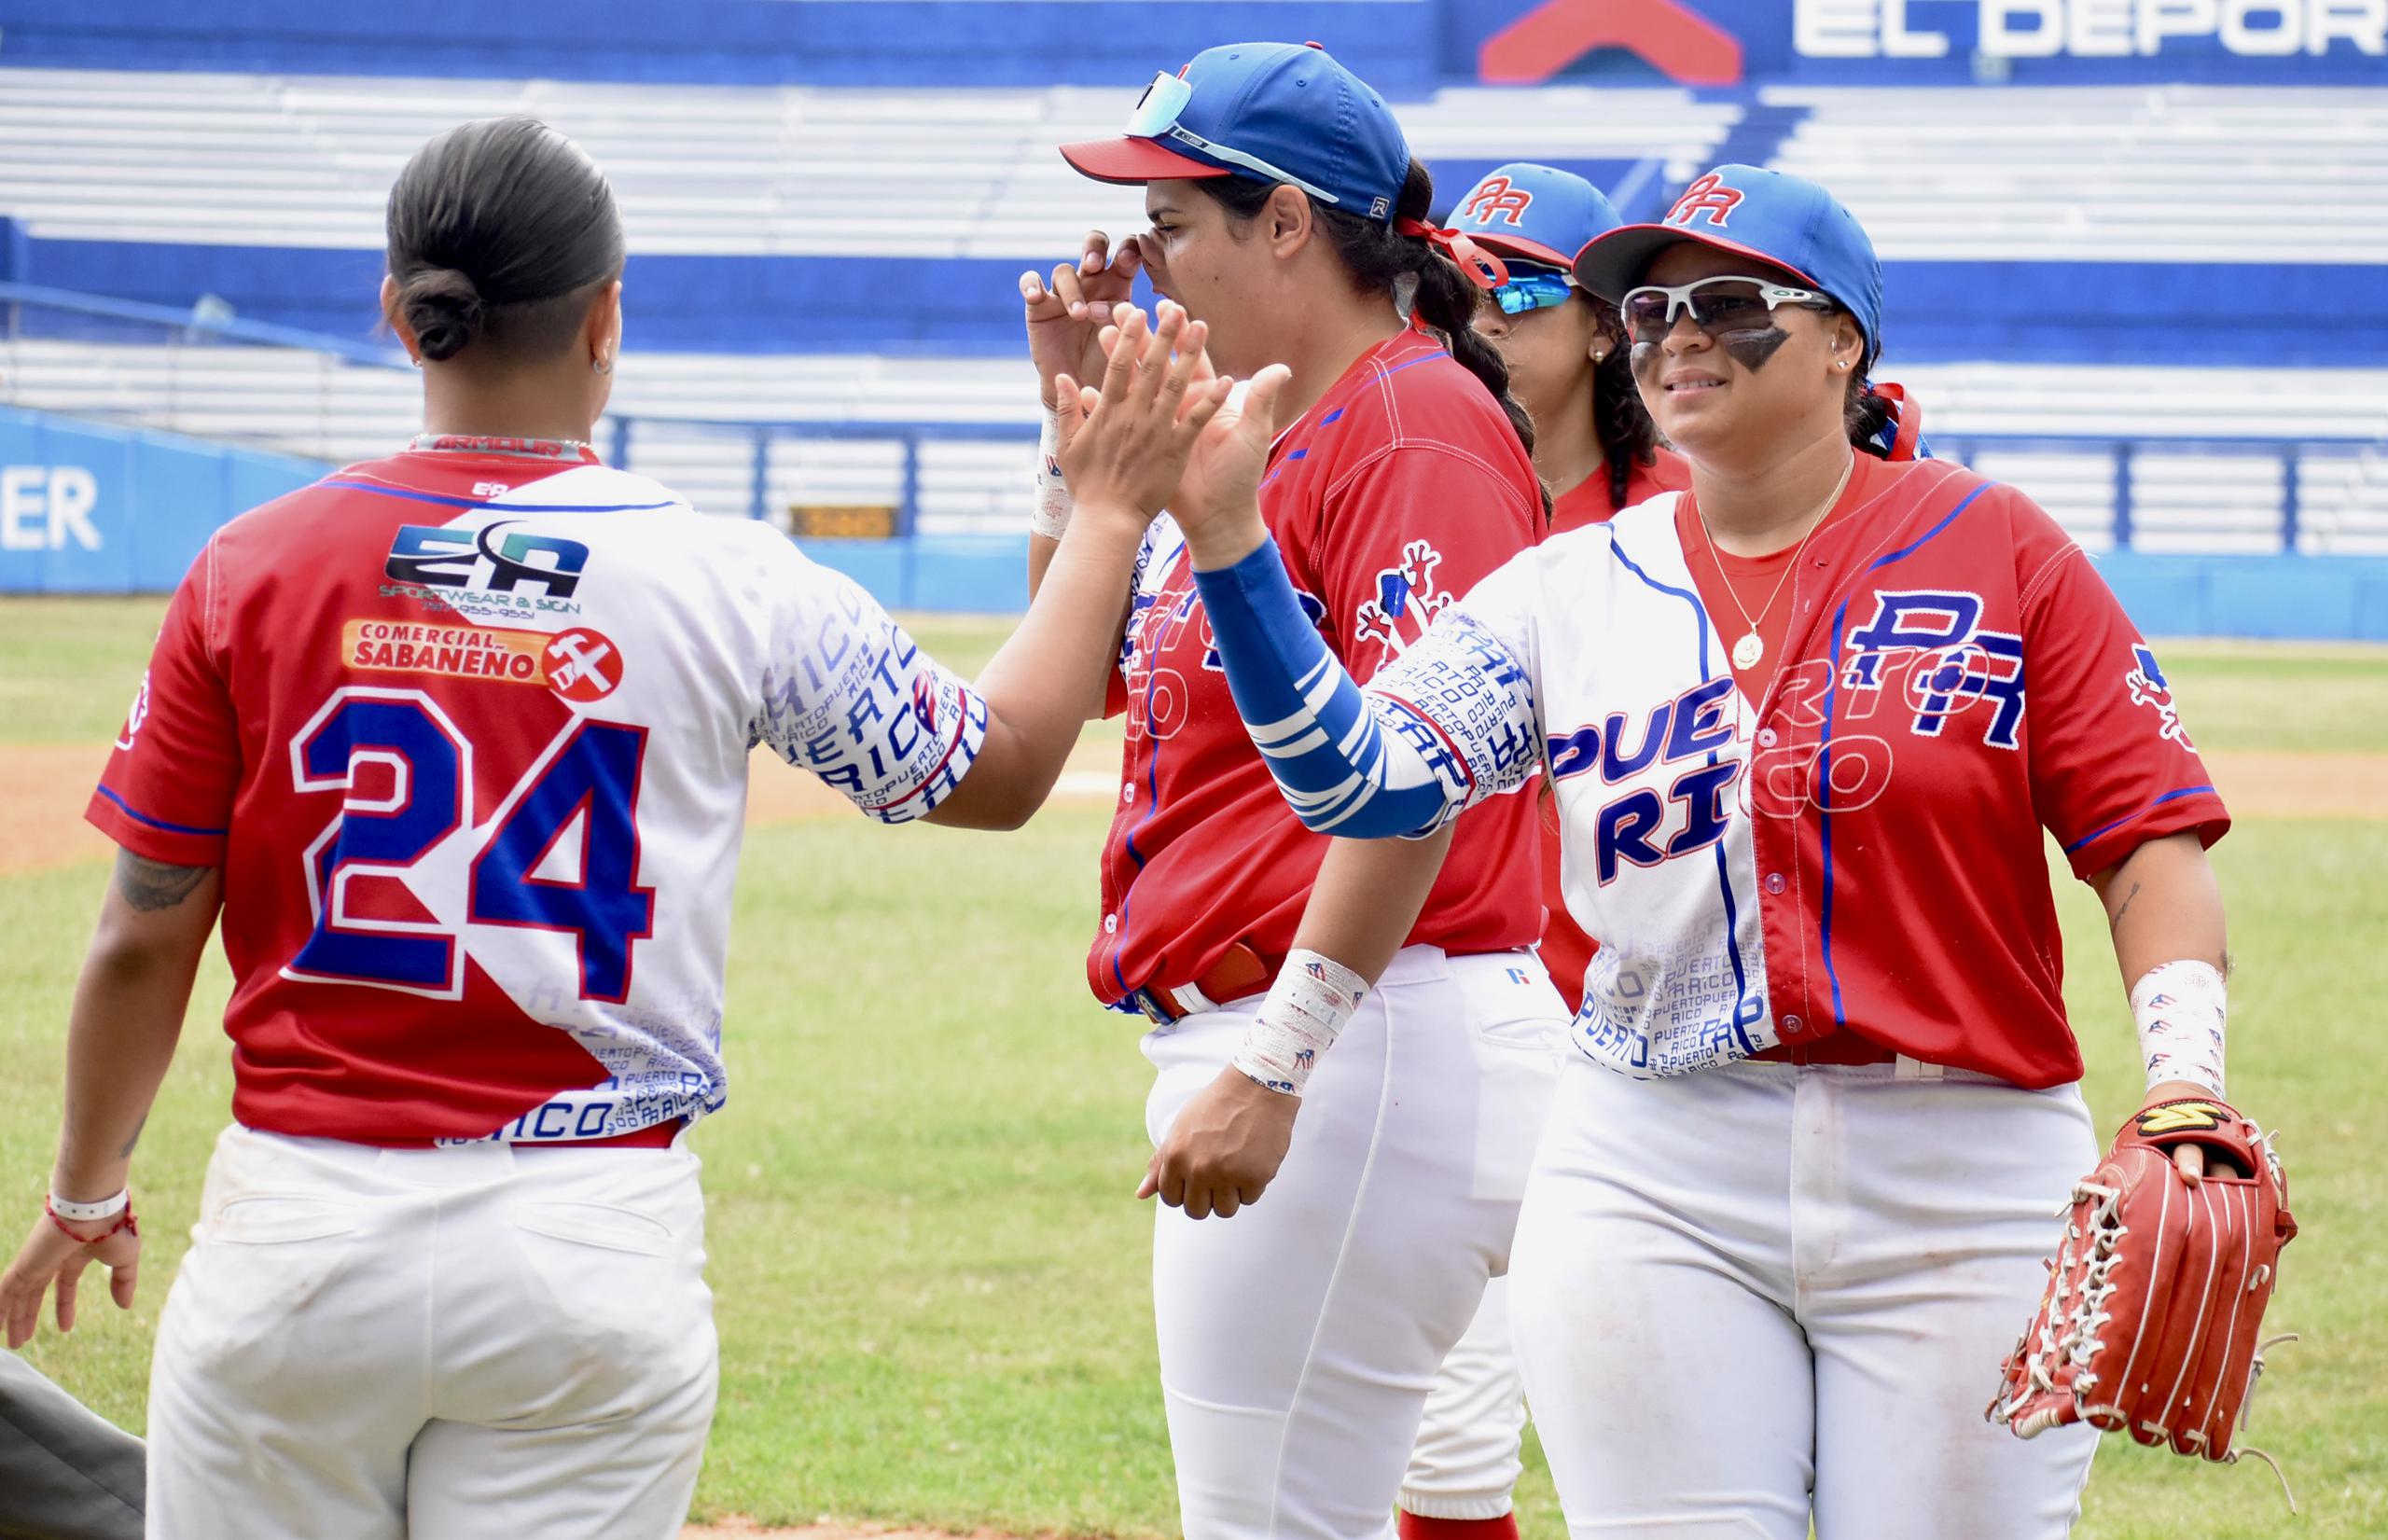 La Selección Nacional de Béisbol logró el miércoles su tercer triunfo en una serie amistosa en La Habana, Cuba.